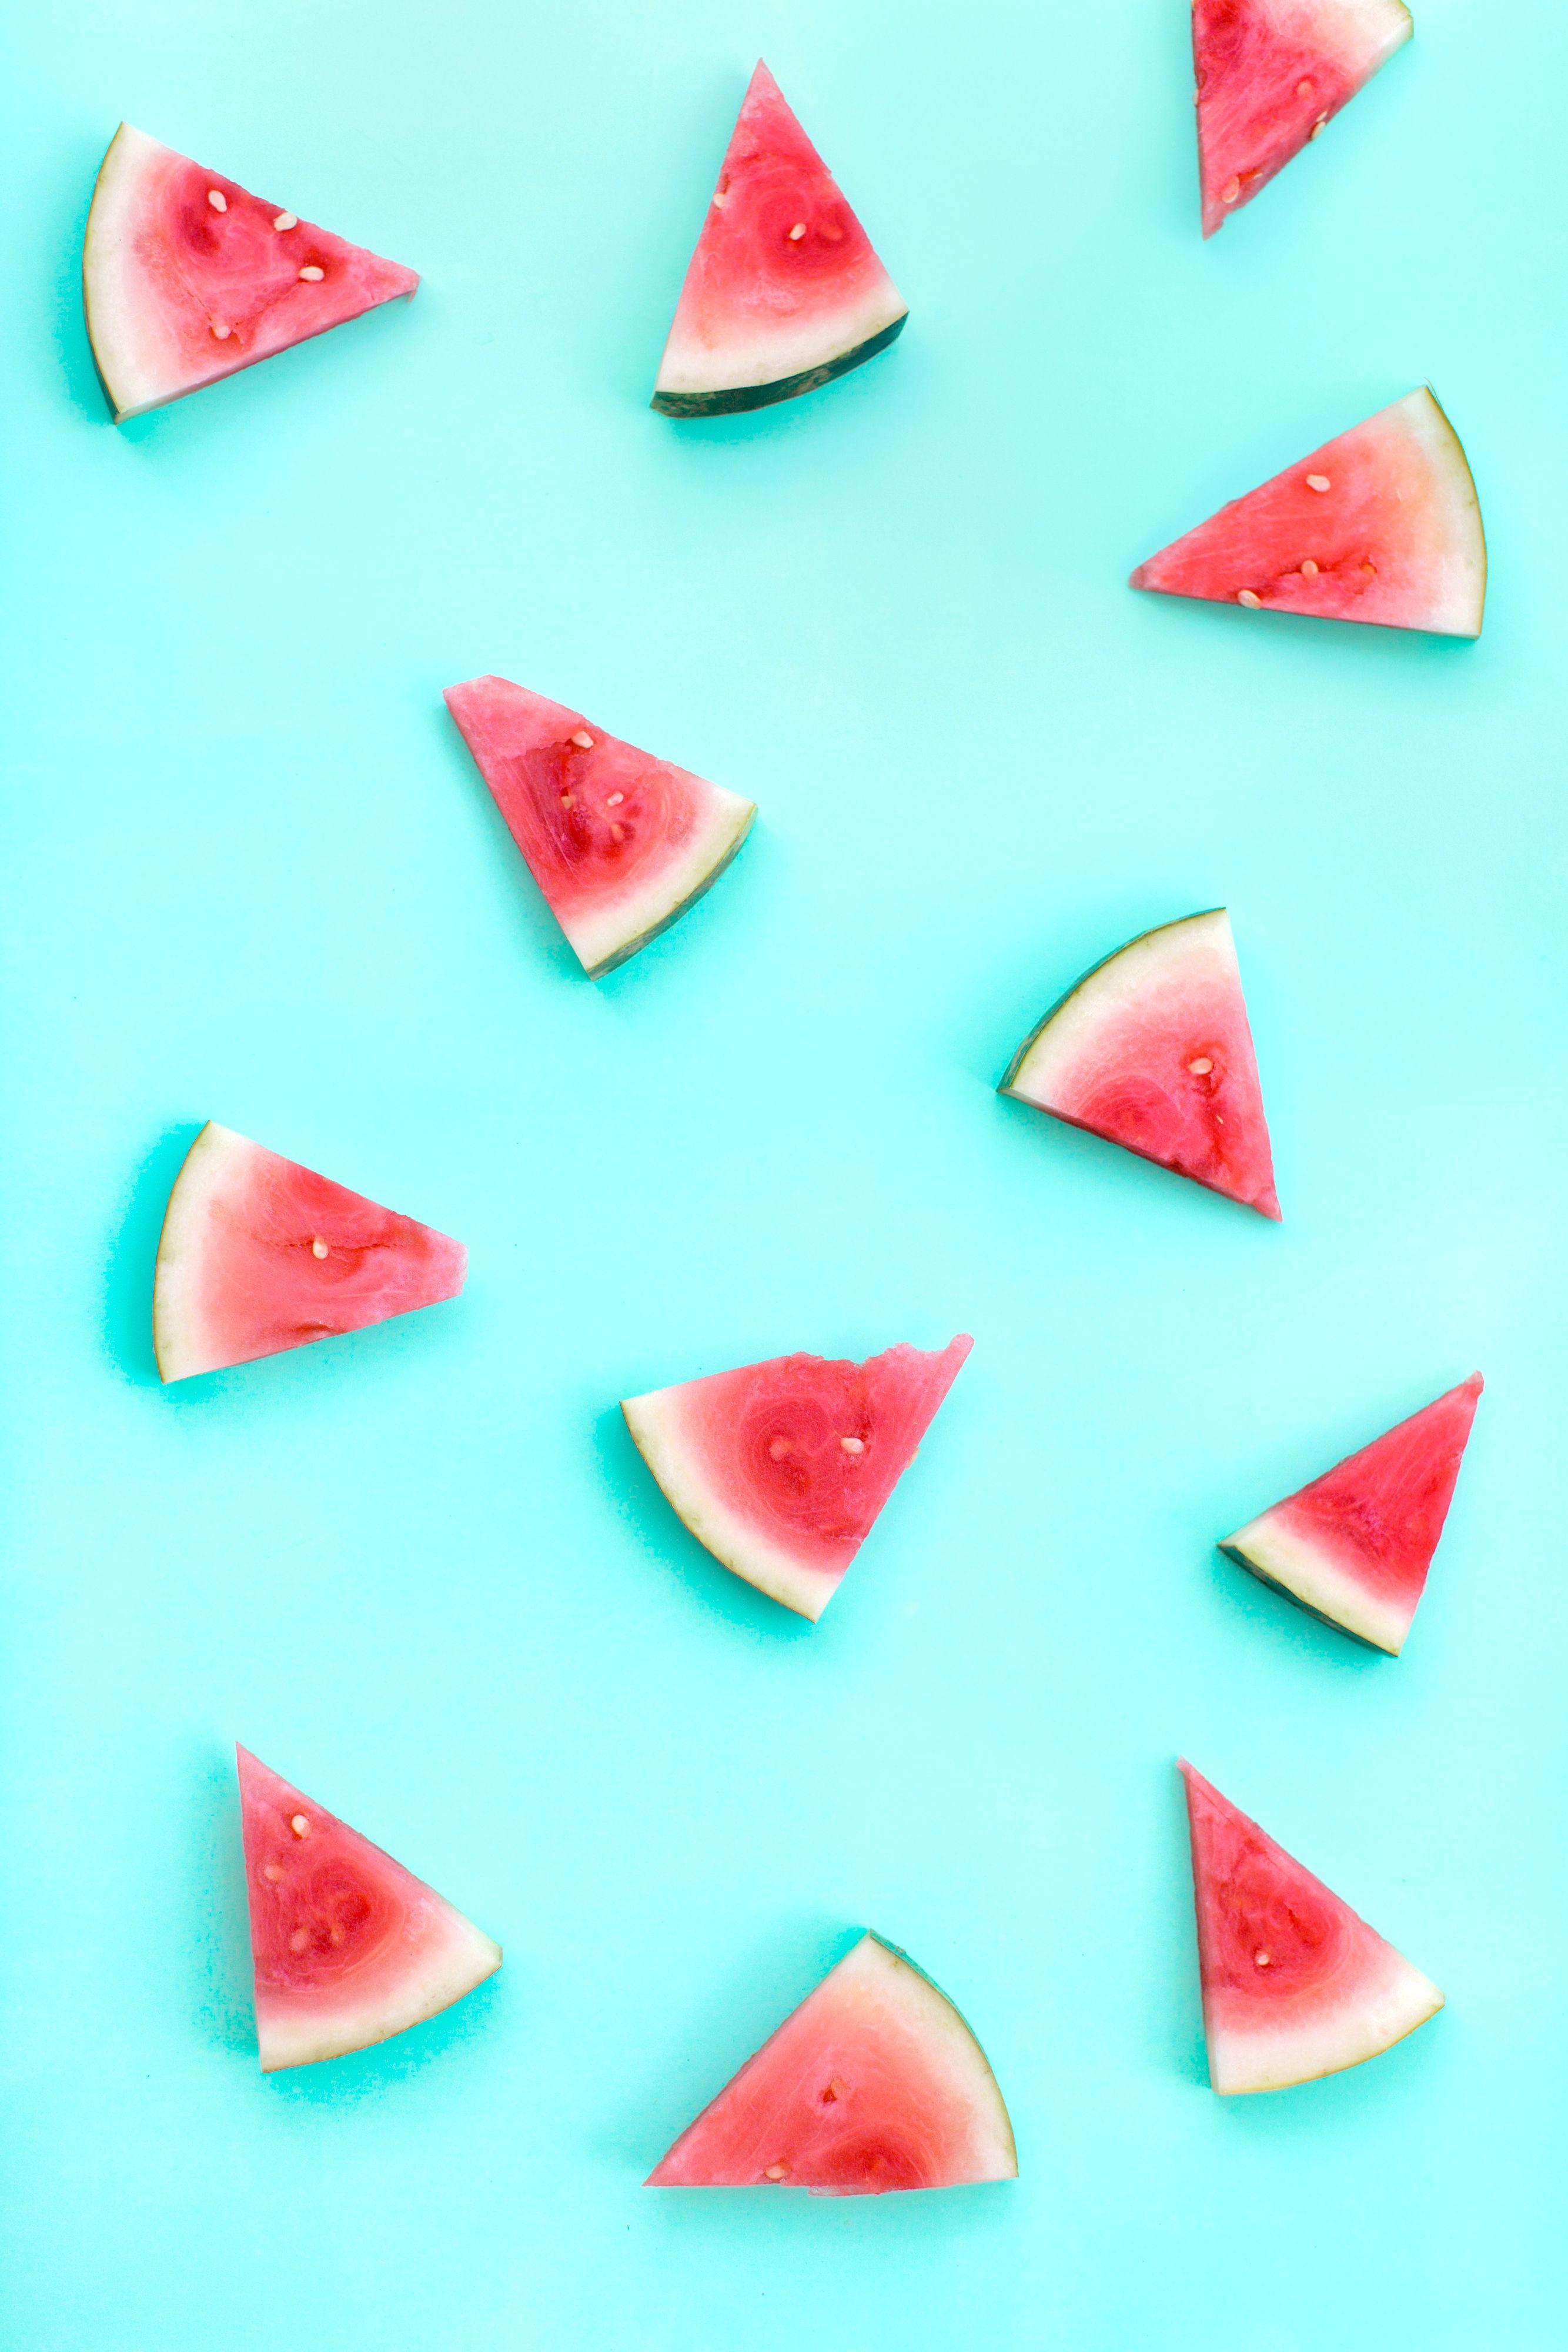 Watermelon summer cell phone wallpaper. Fruits. Cellphone